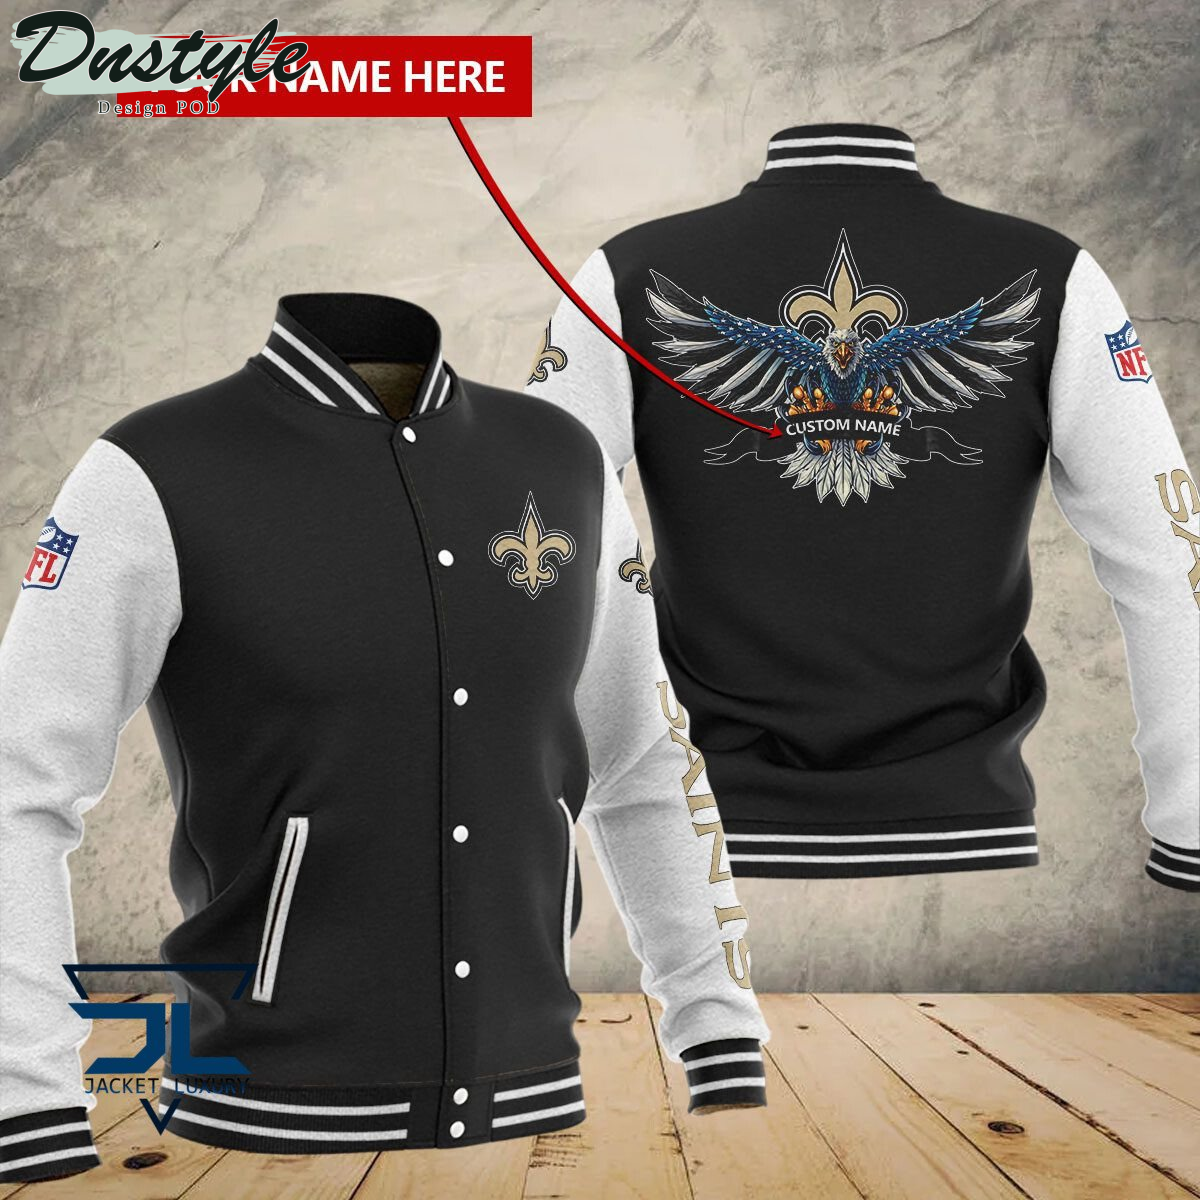 New Orleans Saints Eagles Custom Name Baseball Jacket